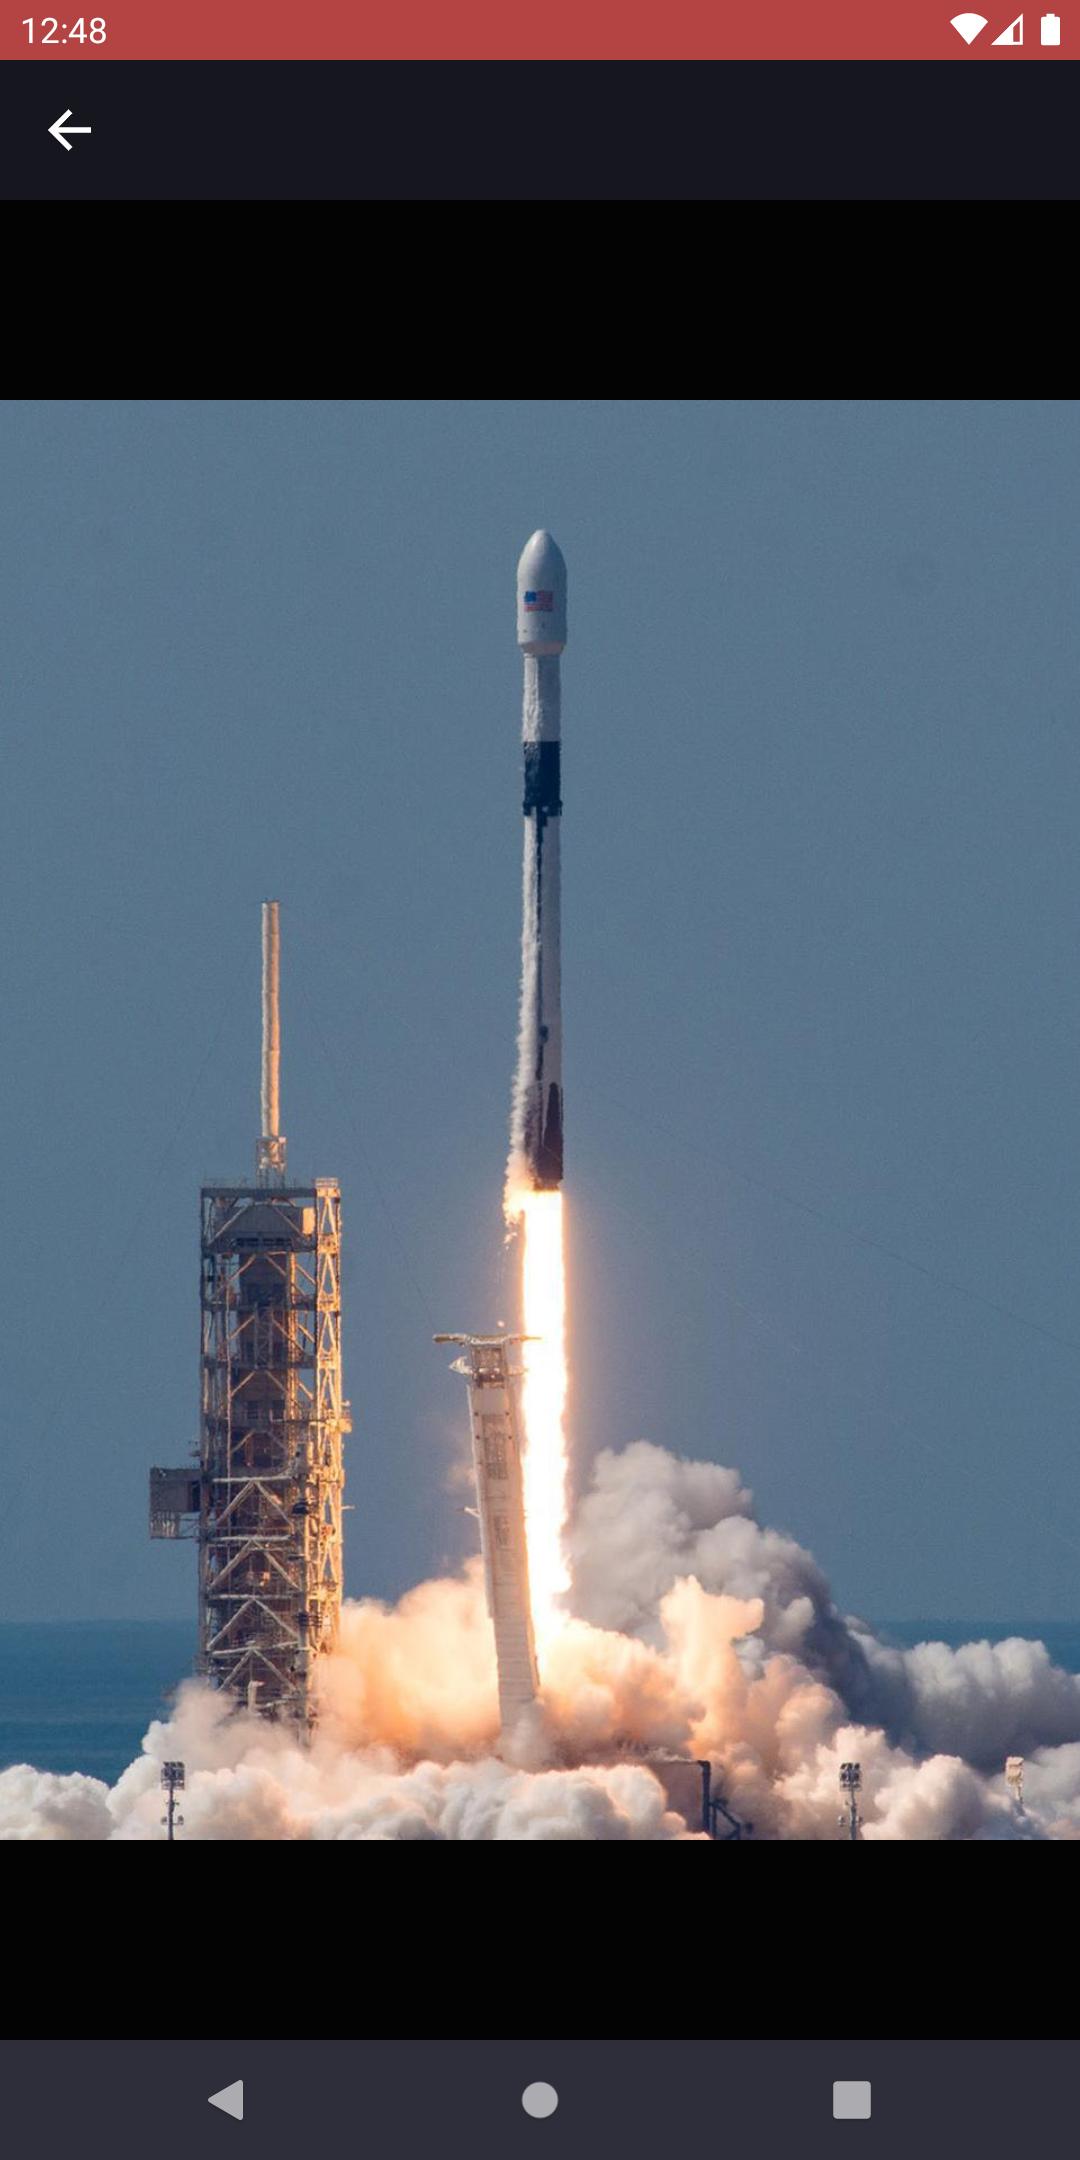 Rocket Watchr - SpaceX, NASA, etc. launch schedule